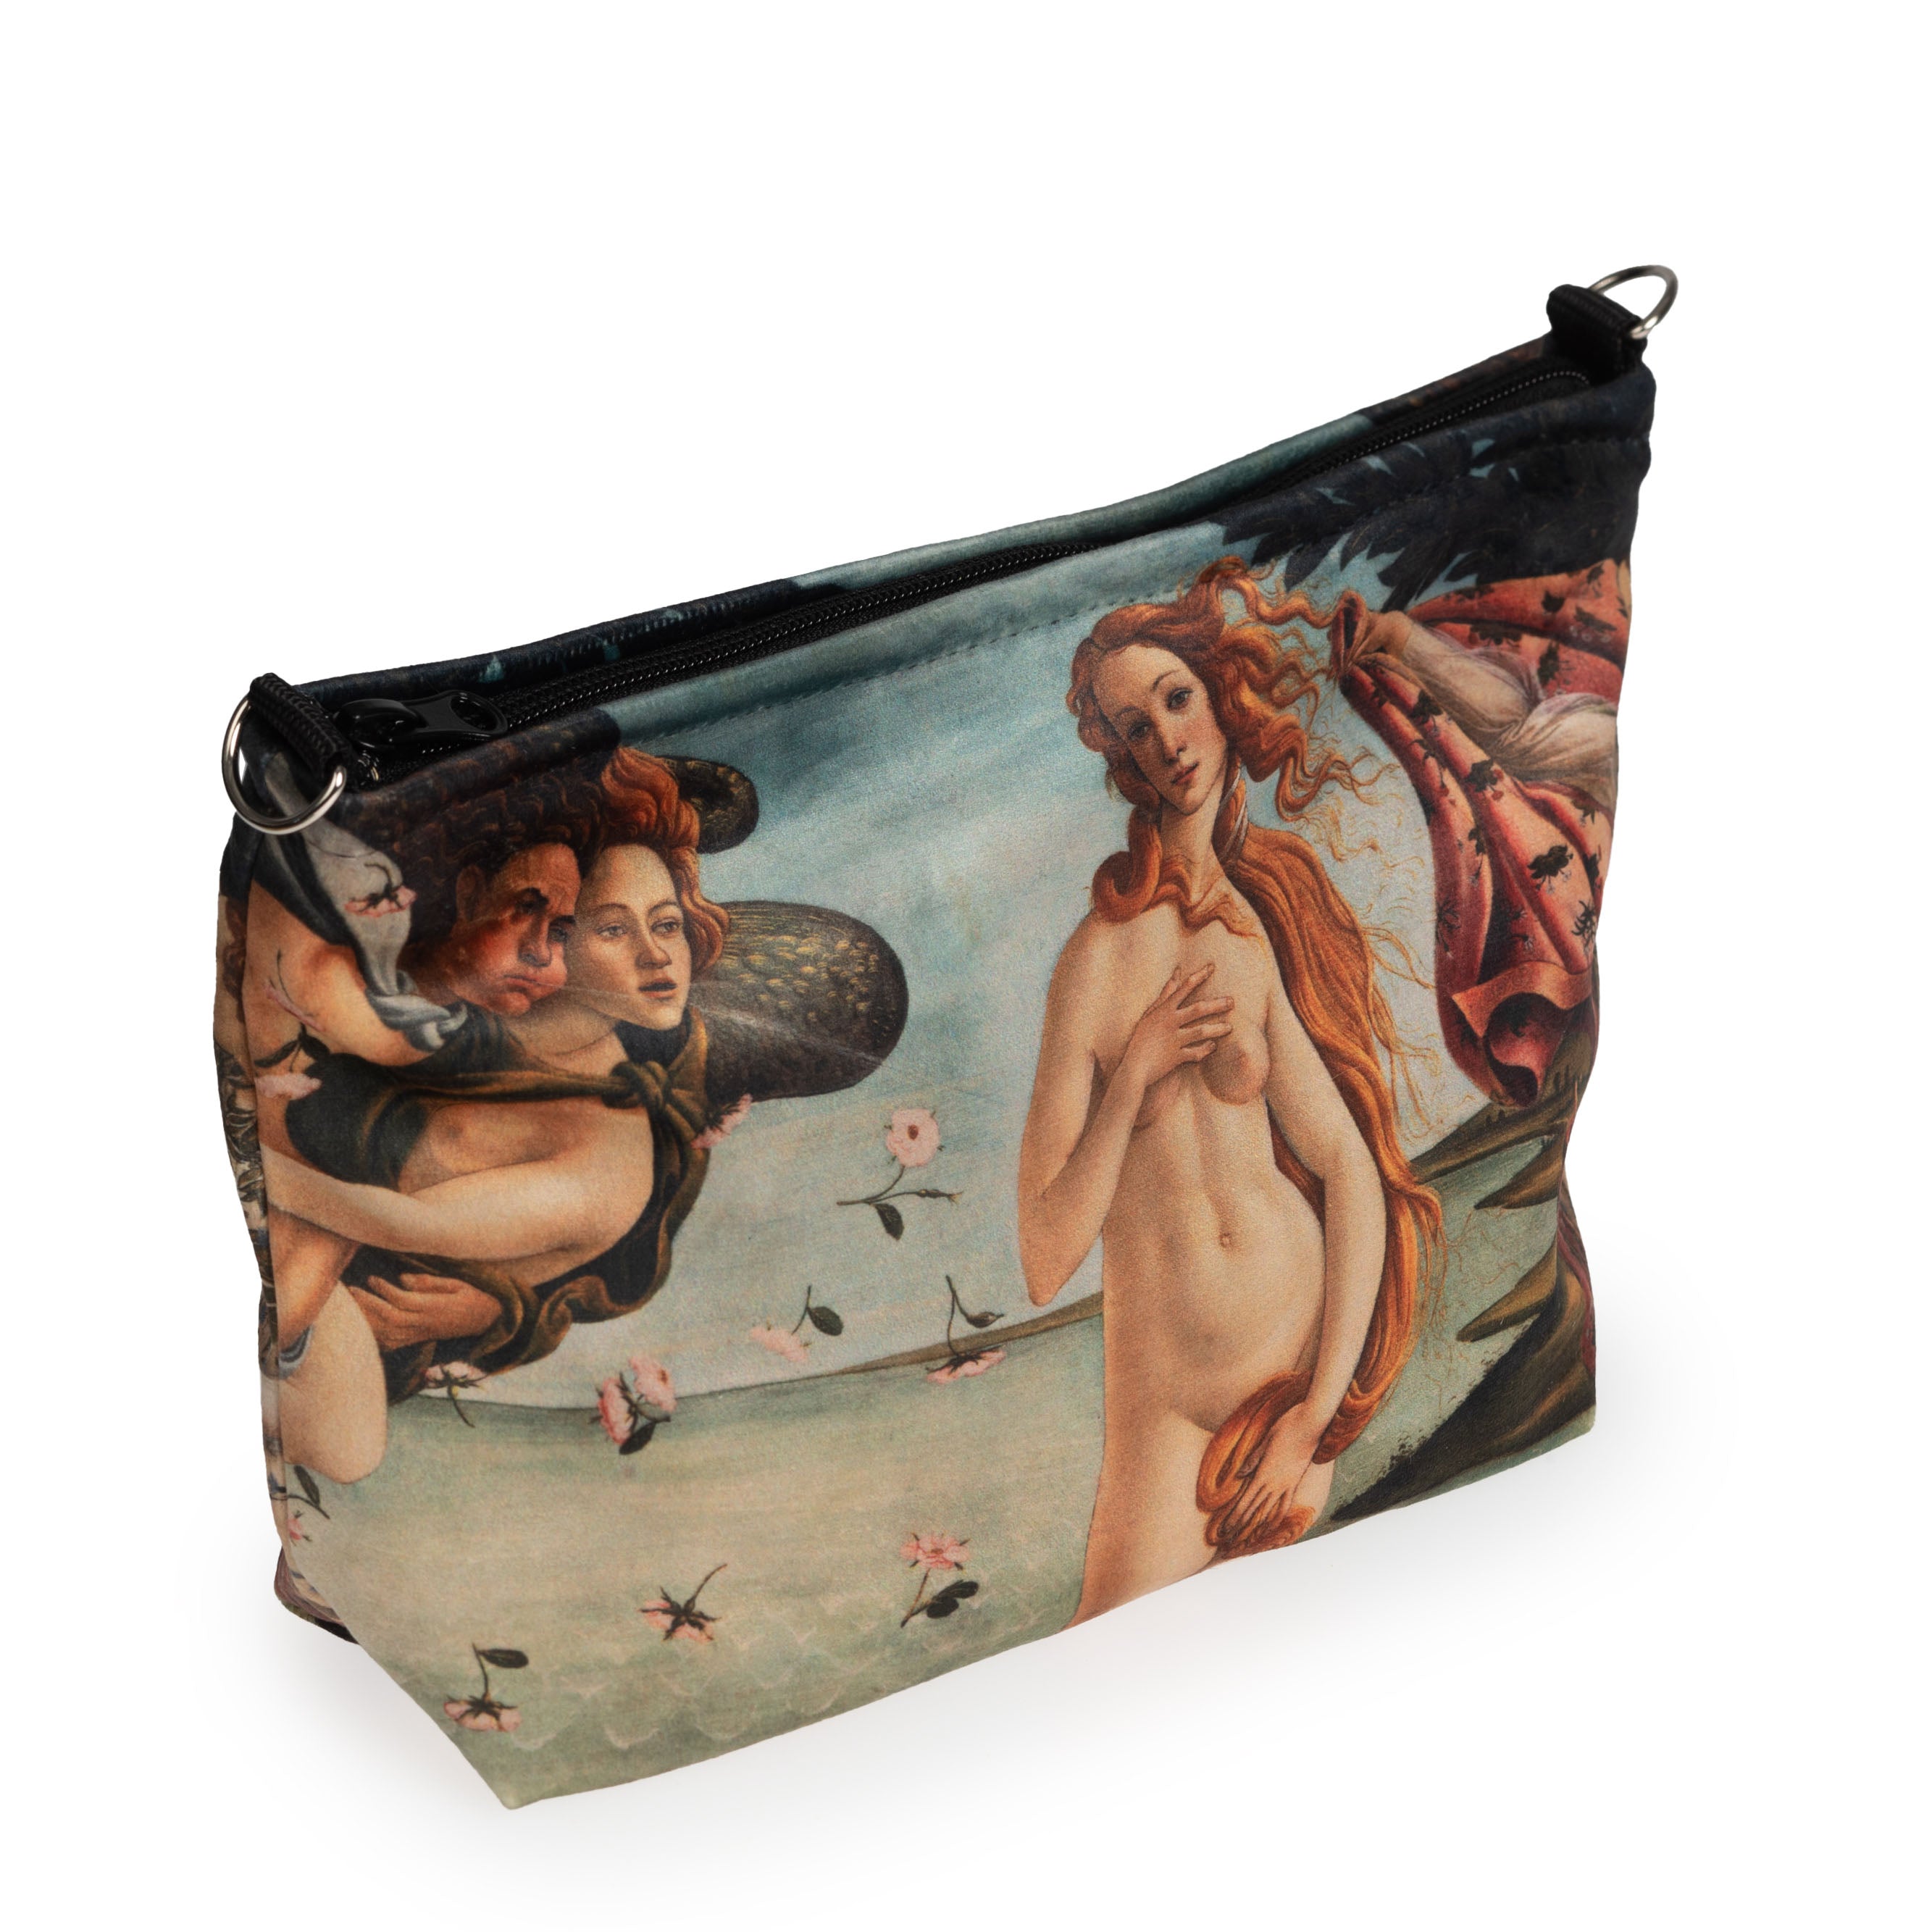 Cosmetics Sandro Botticelli "The Birth of Venus"